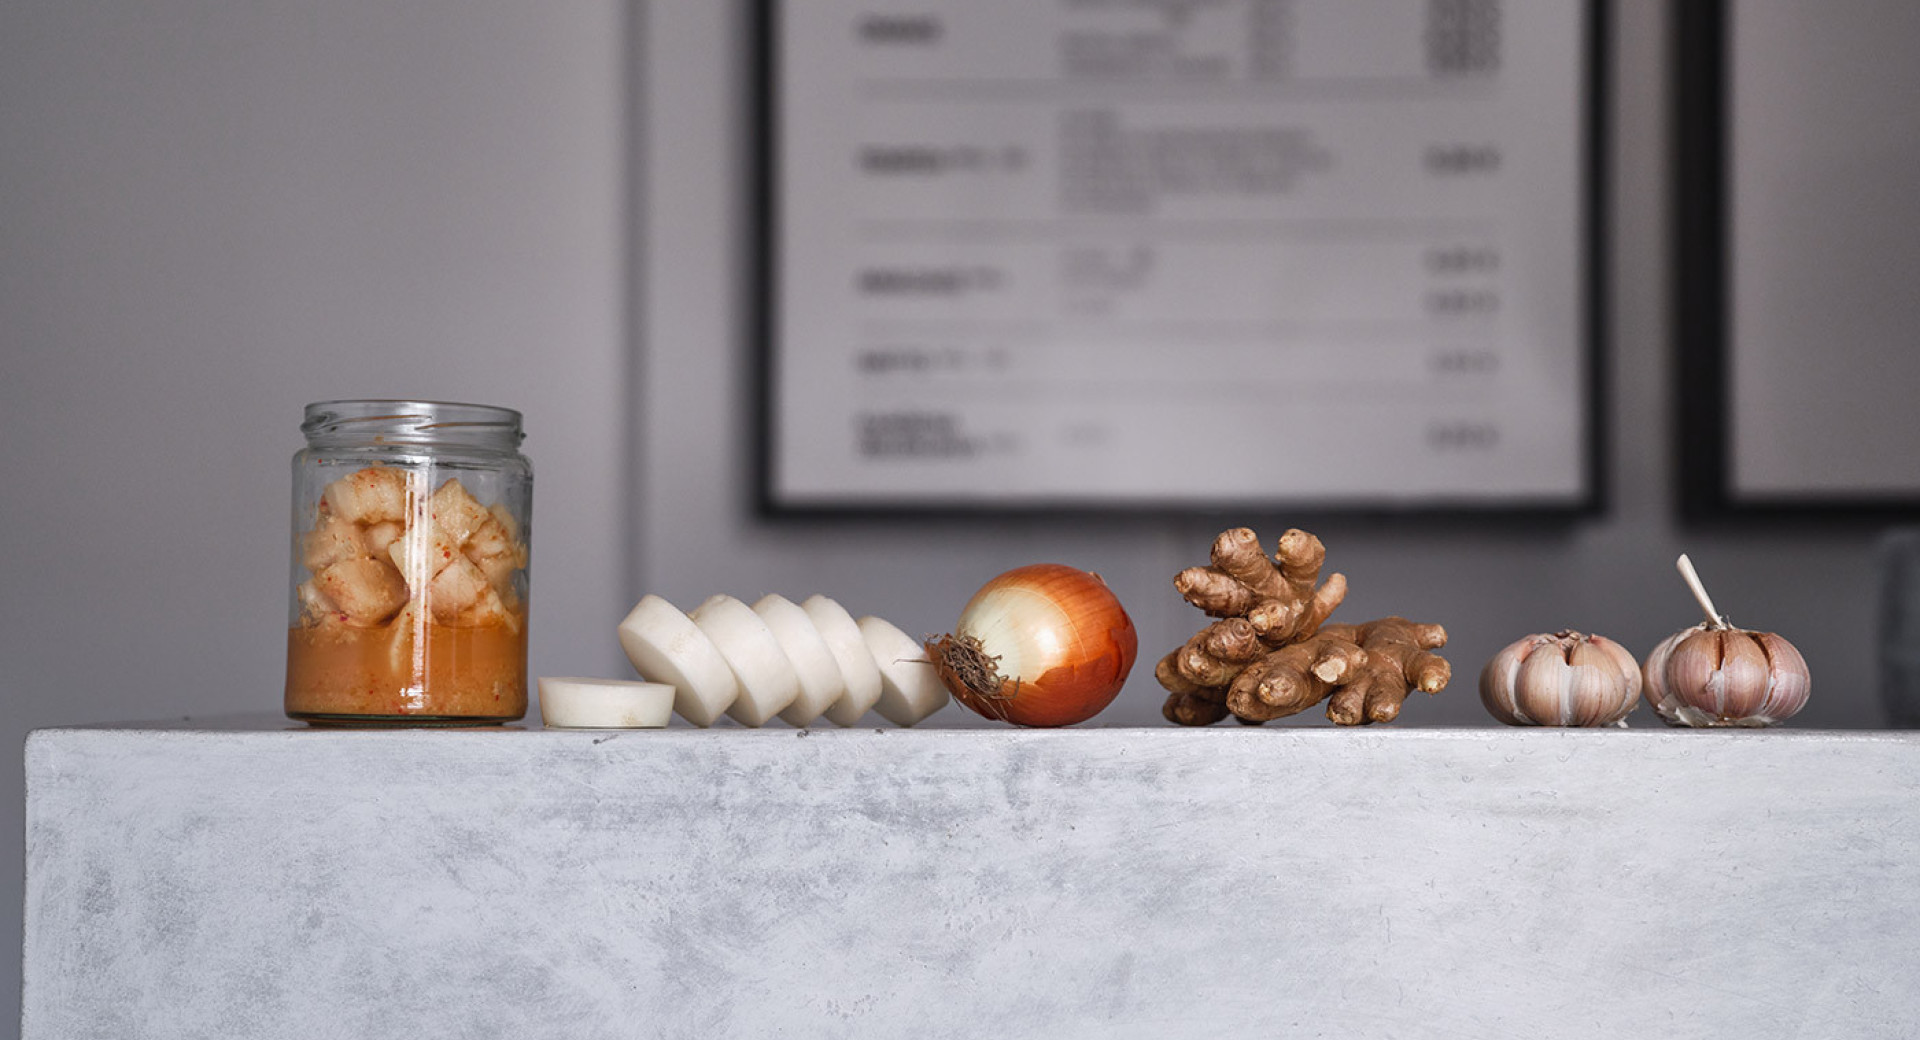 Zbir pridelkov na marmornati mizi: z leve proti desni omaka v kozarcu, narezan por, čebula, ingver in česen